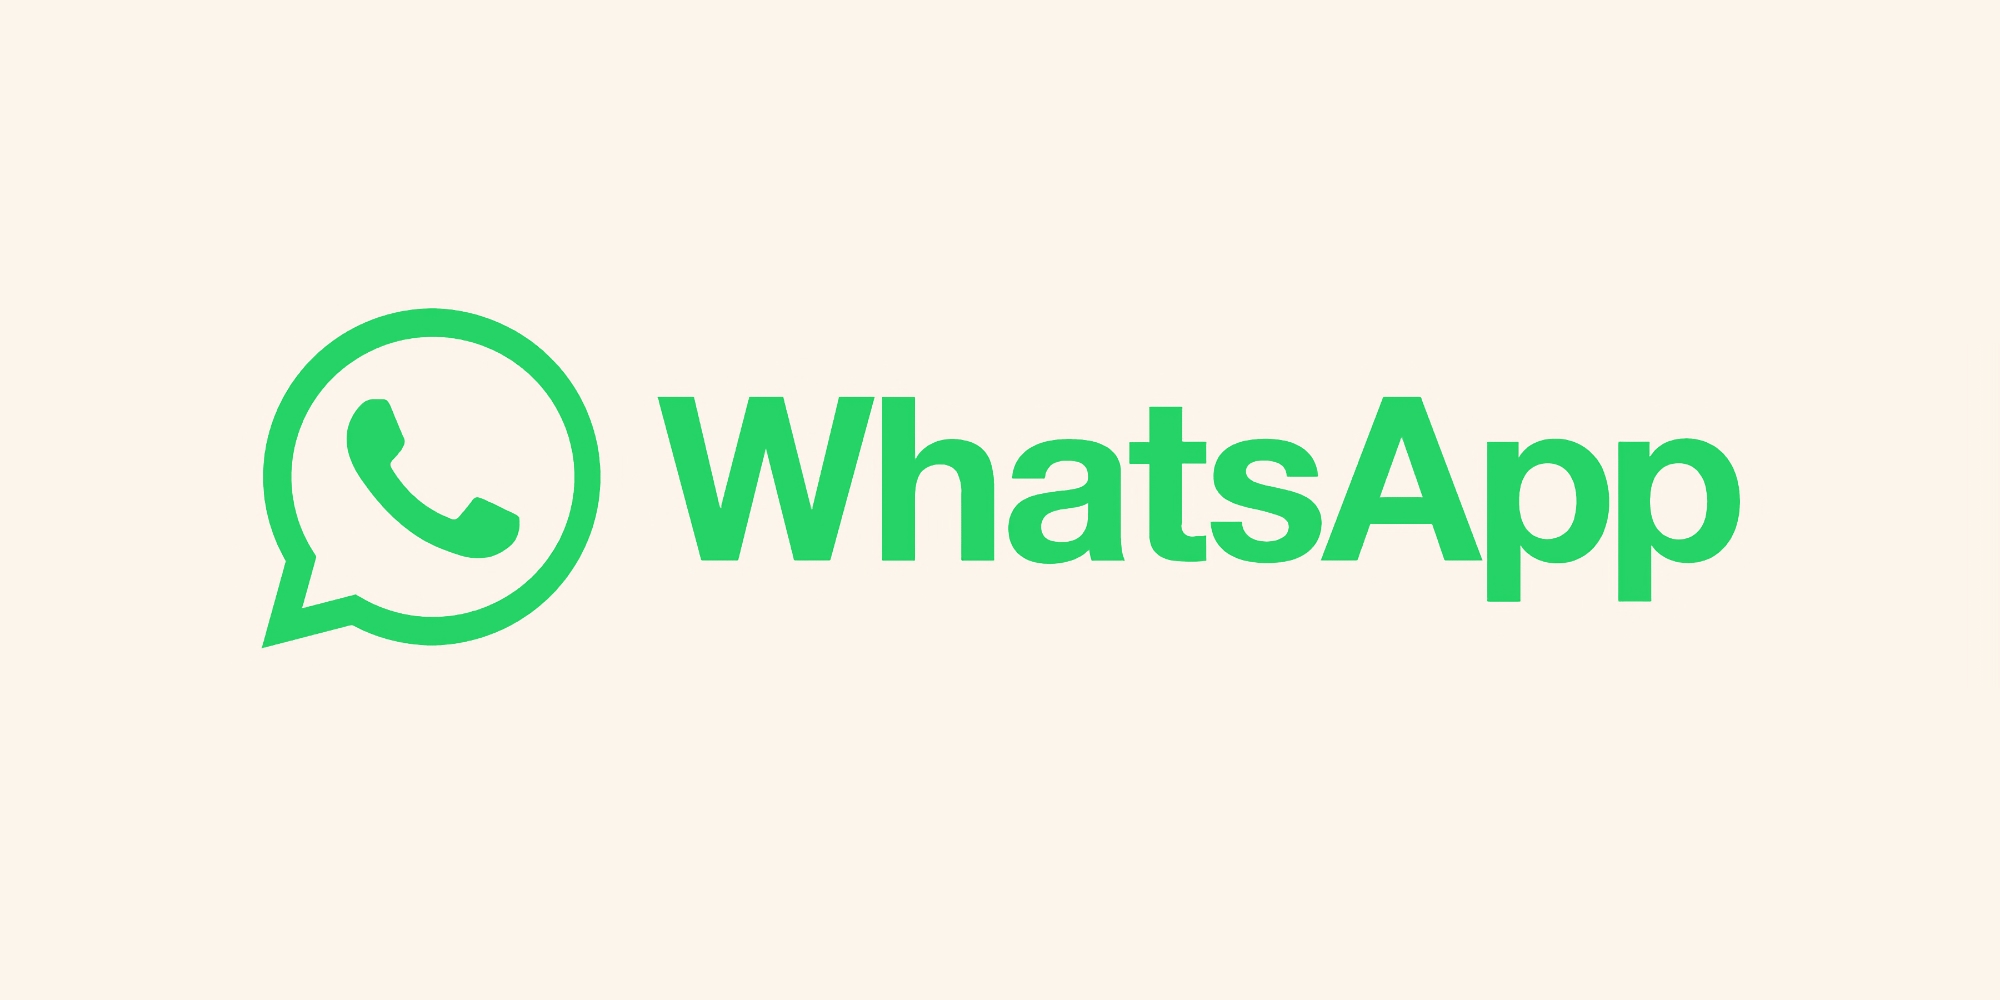 WhatsApp testet eine Geheimcode-Funktion für Chats in der Android-App